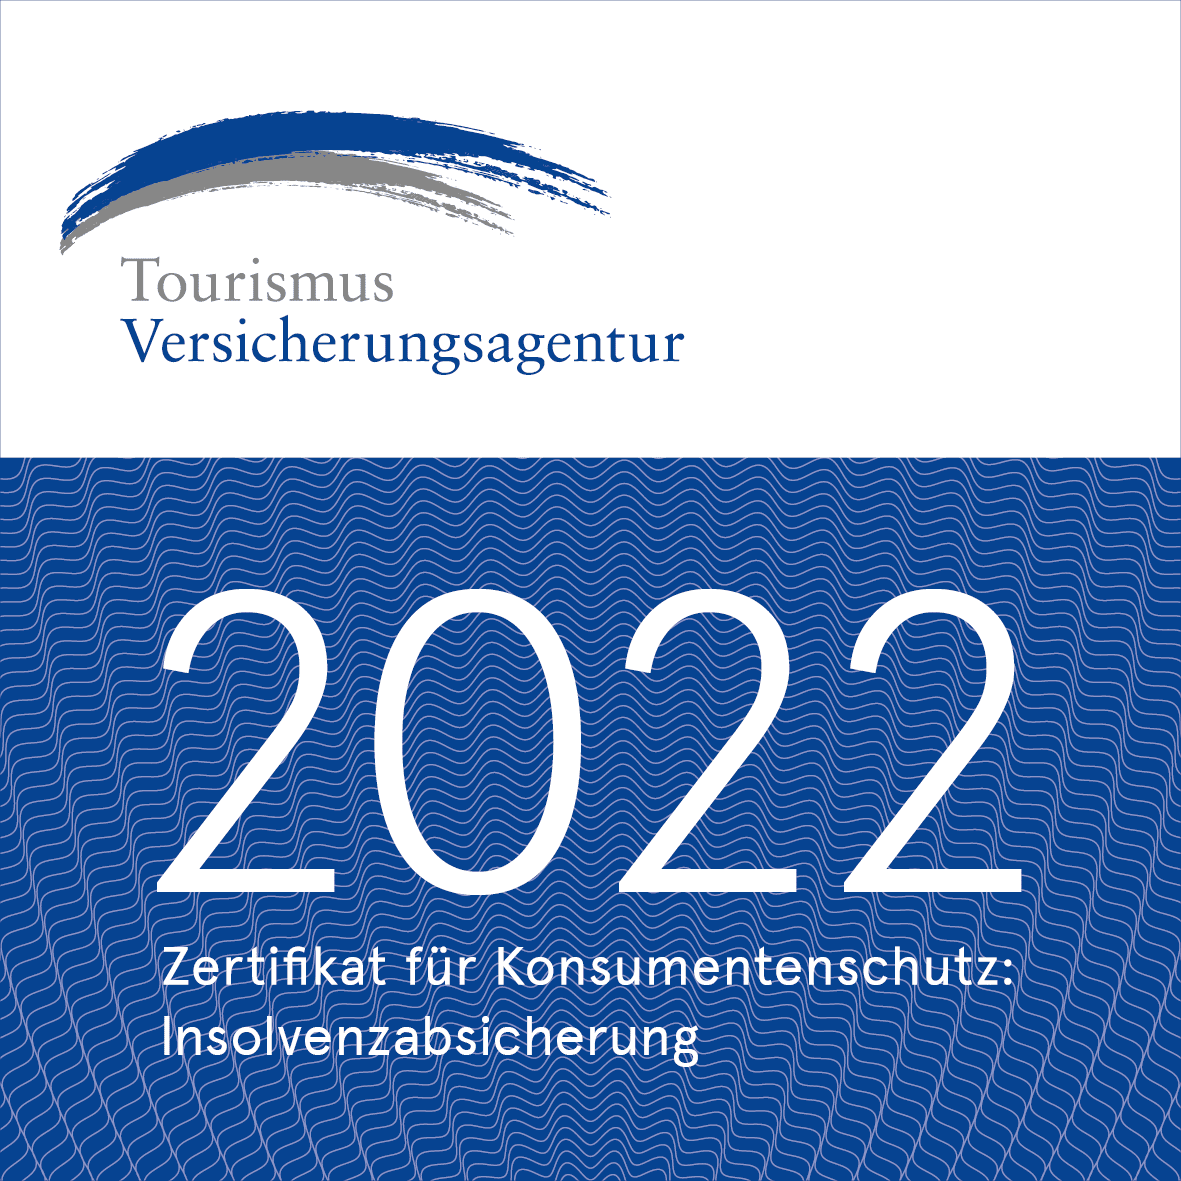 TVA-Tourismusversicherungsagentur GmbH